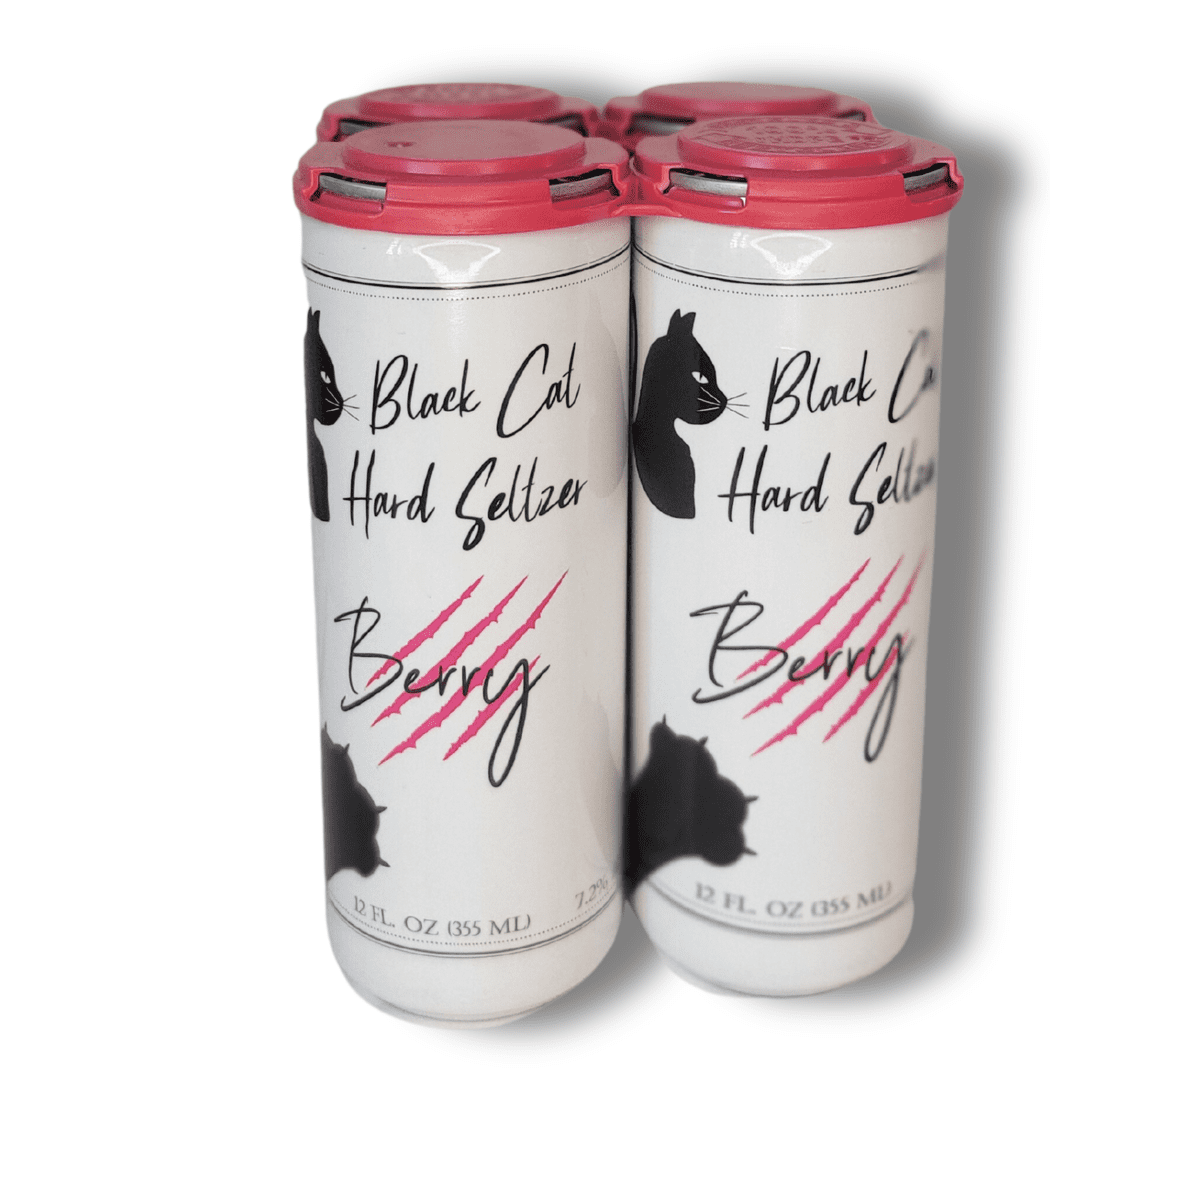 Black Dog - Berry Seltzer - 12oz Sleek Cans - 4-Pack